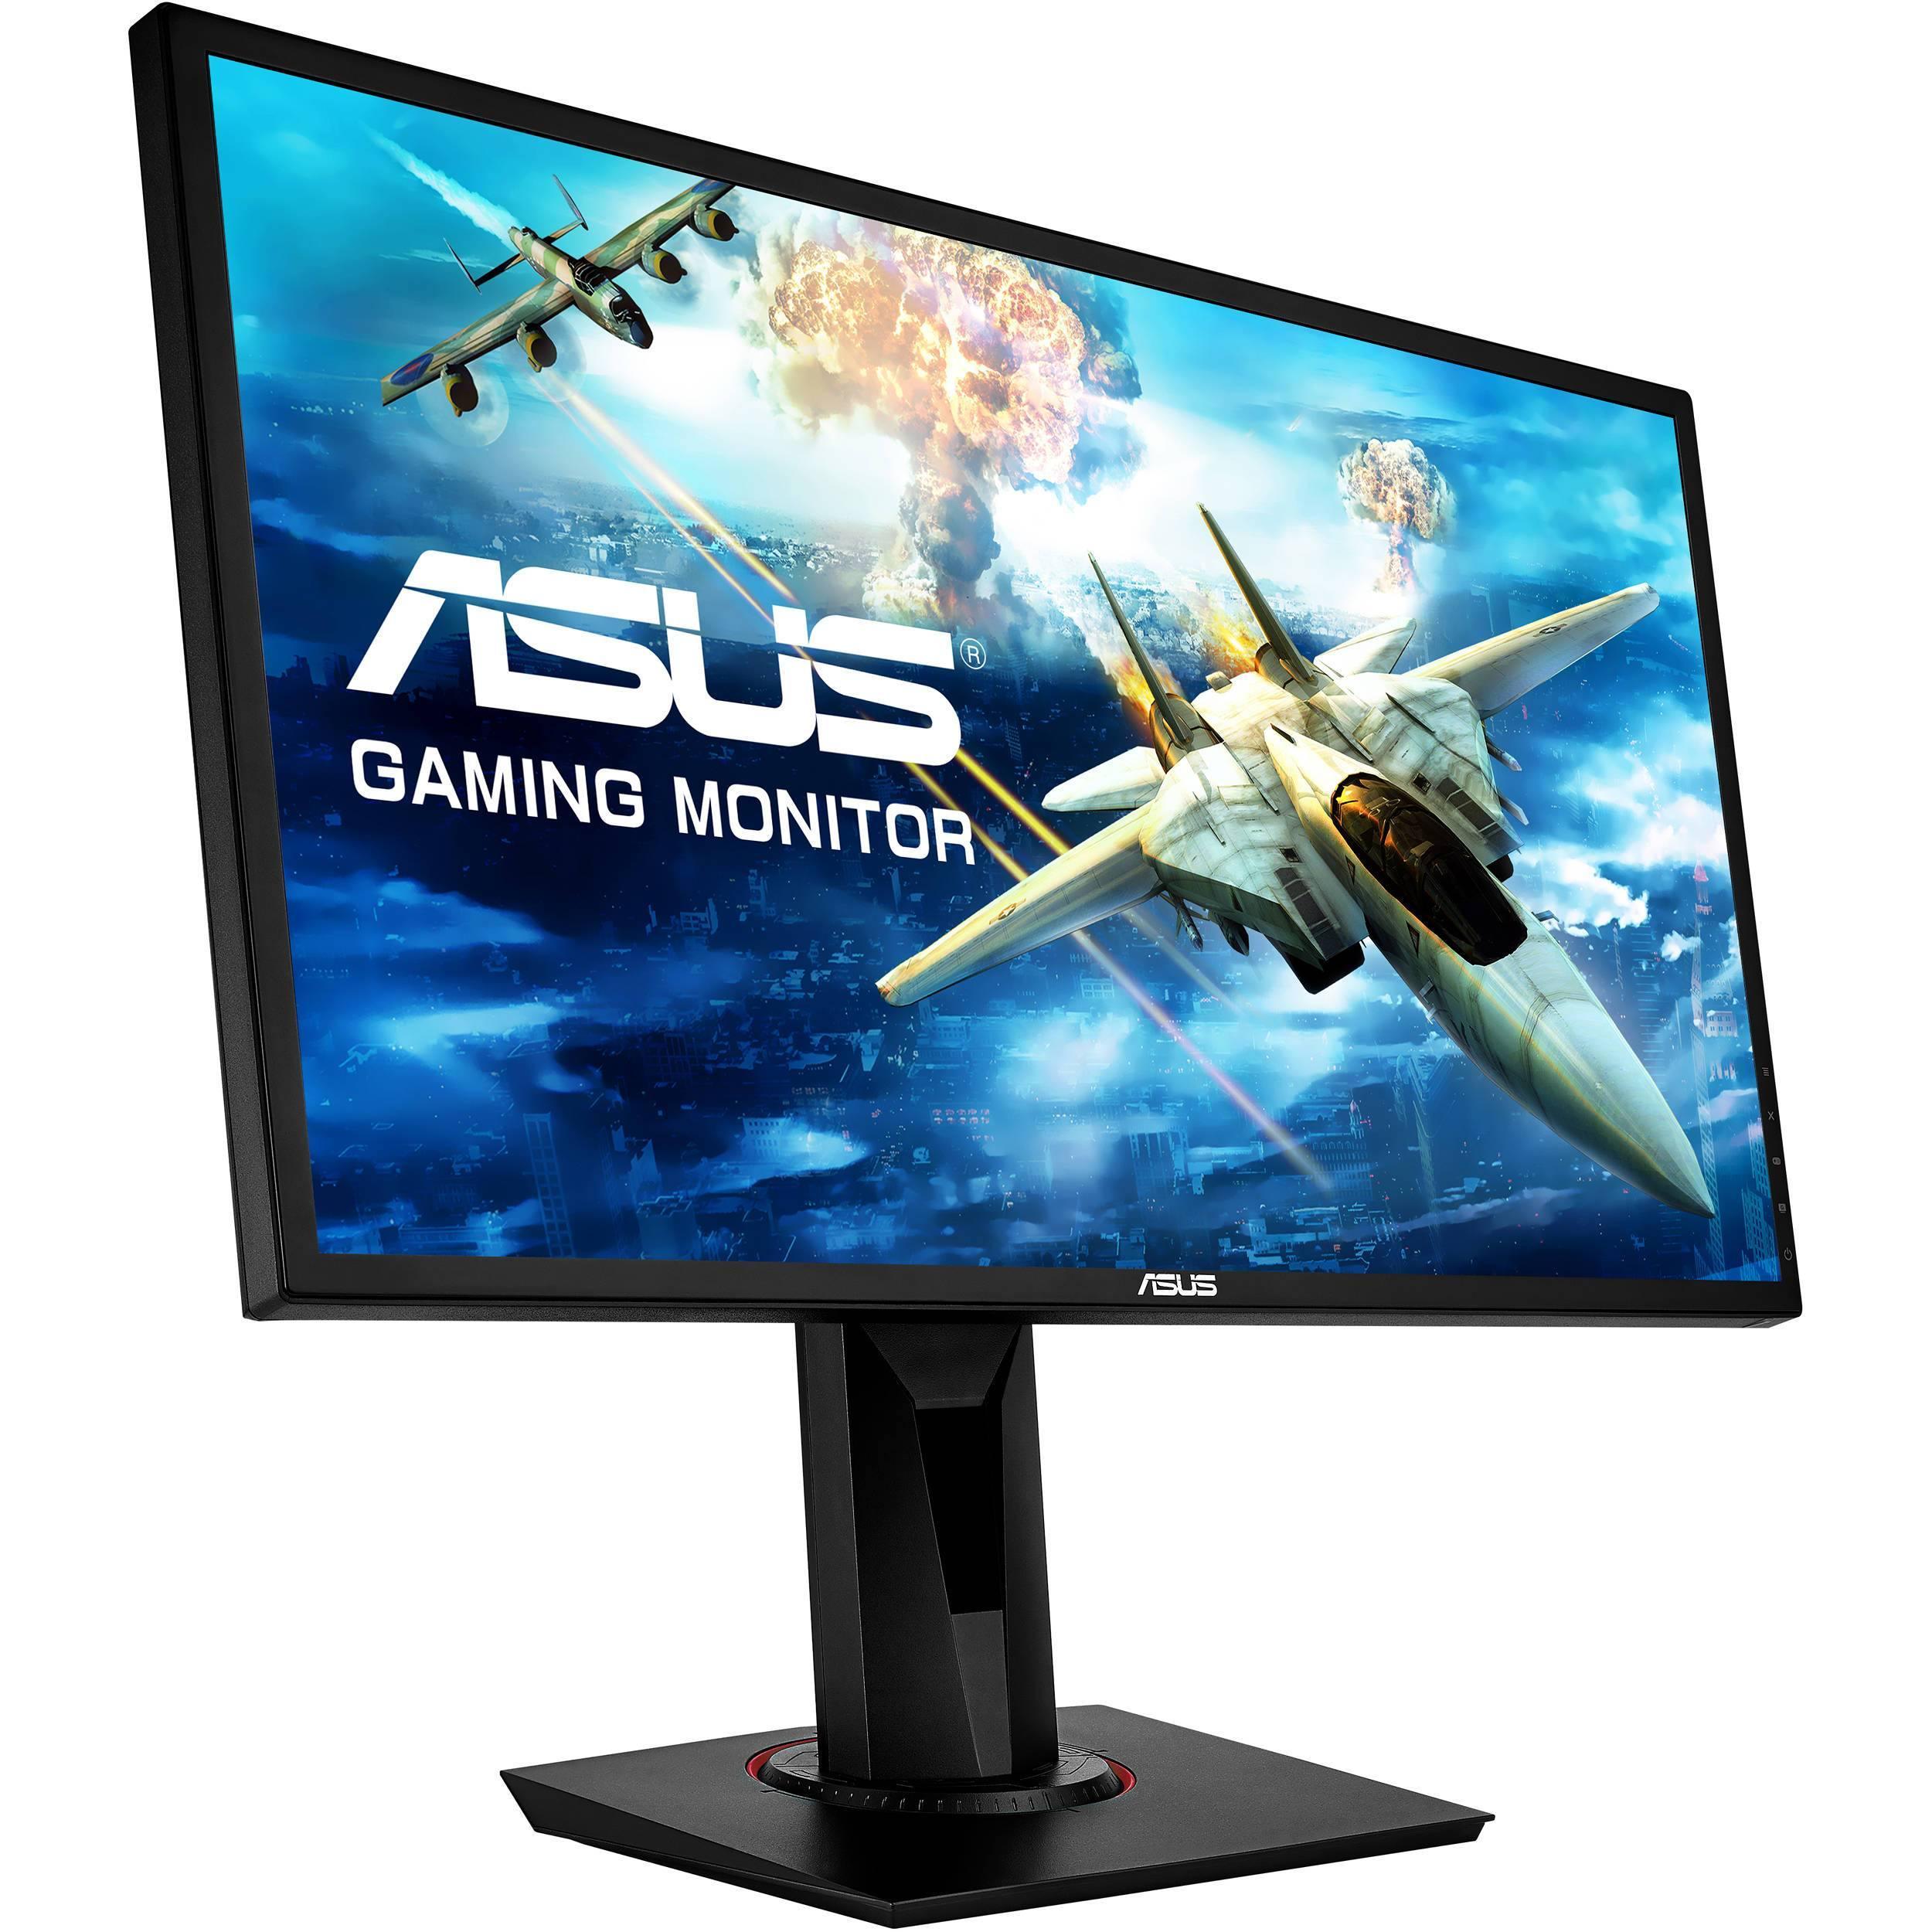 ASUS VG248QG Gaming Monitor